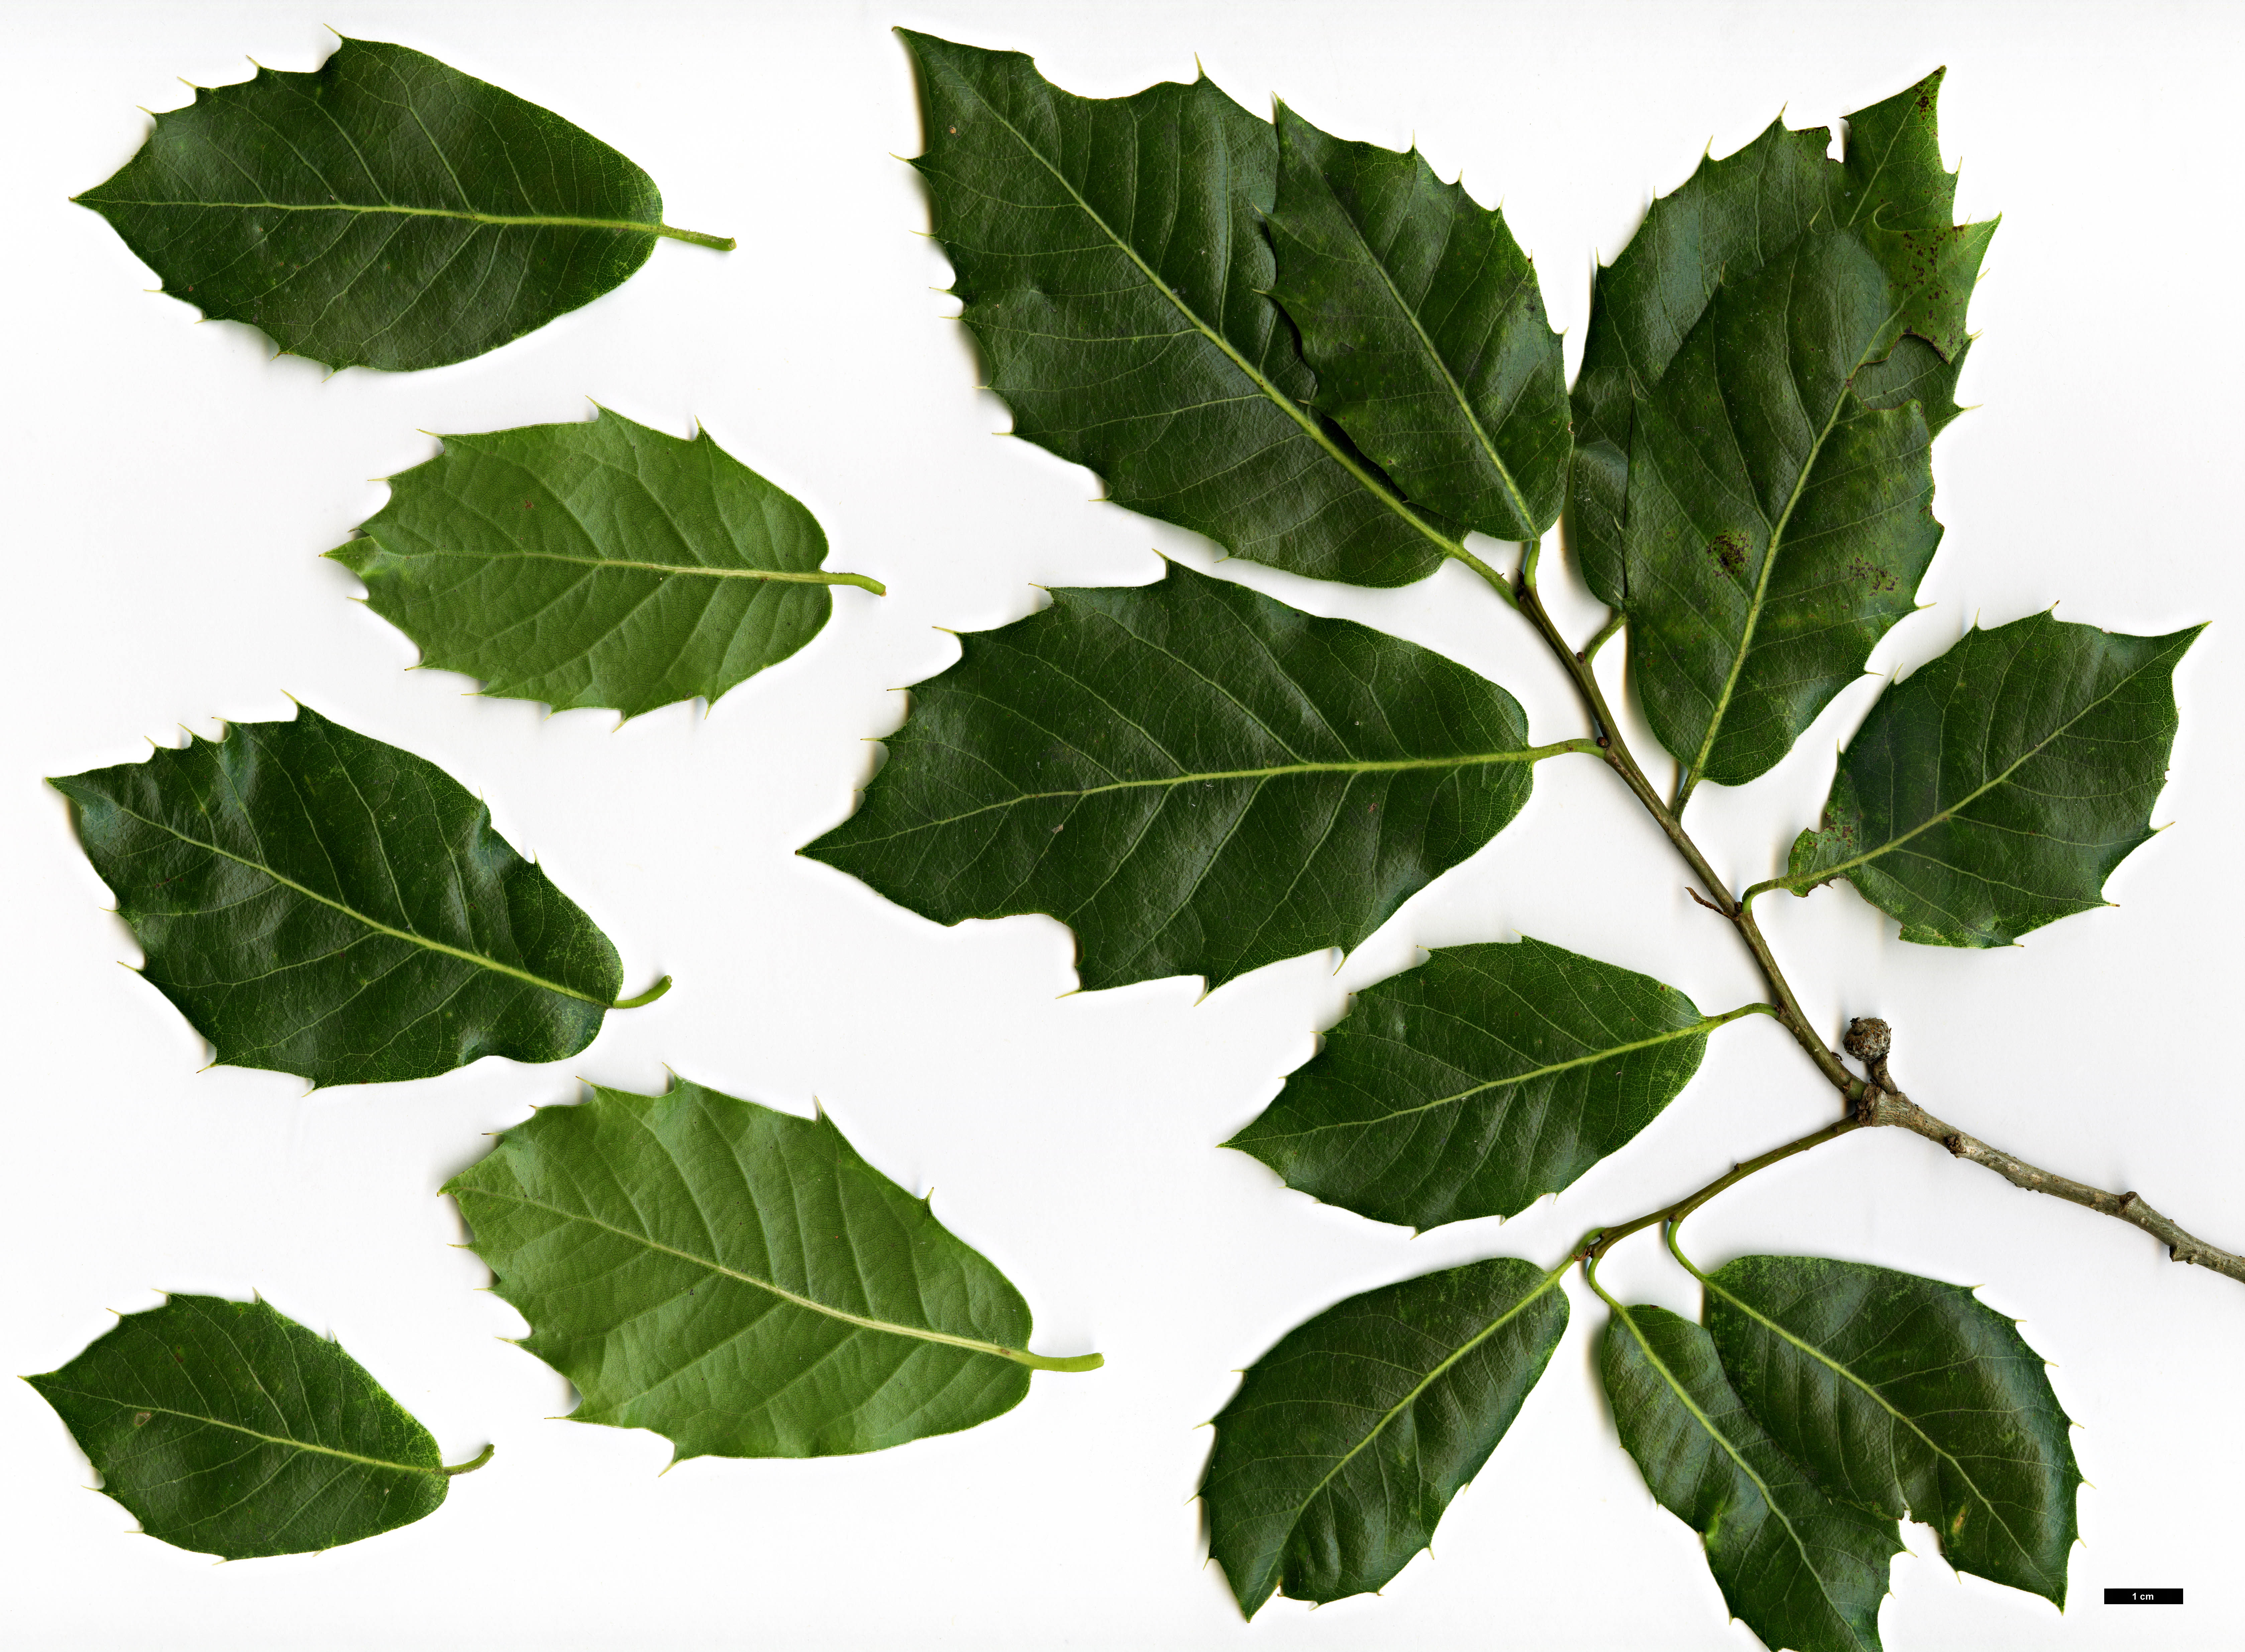 High resolution image: Family: Fagaceae - Genus: Quercus - Taxon: floribunda